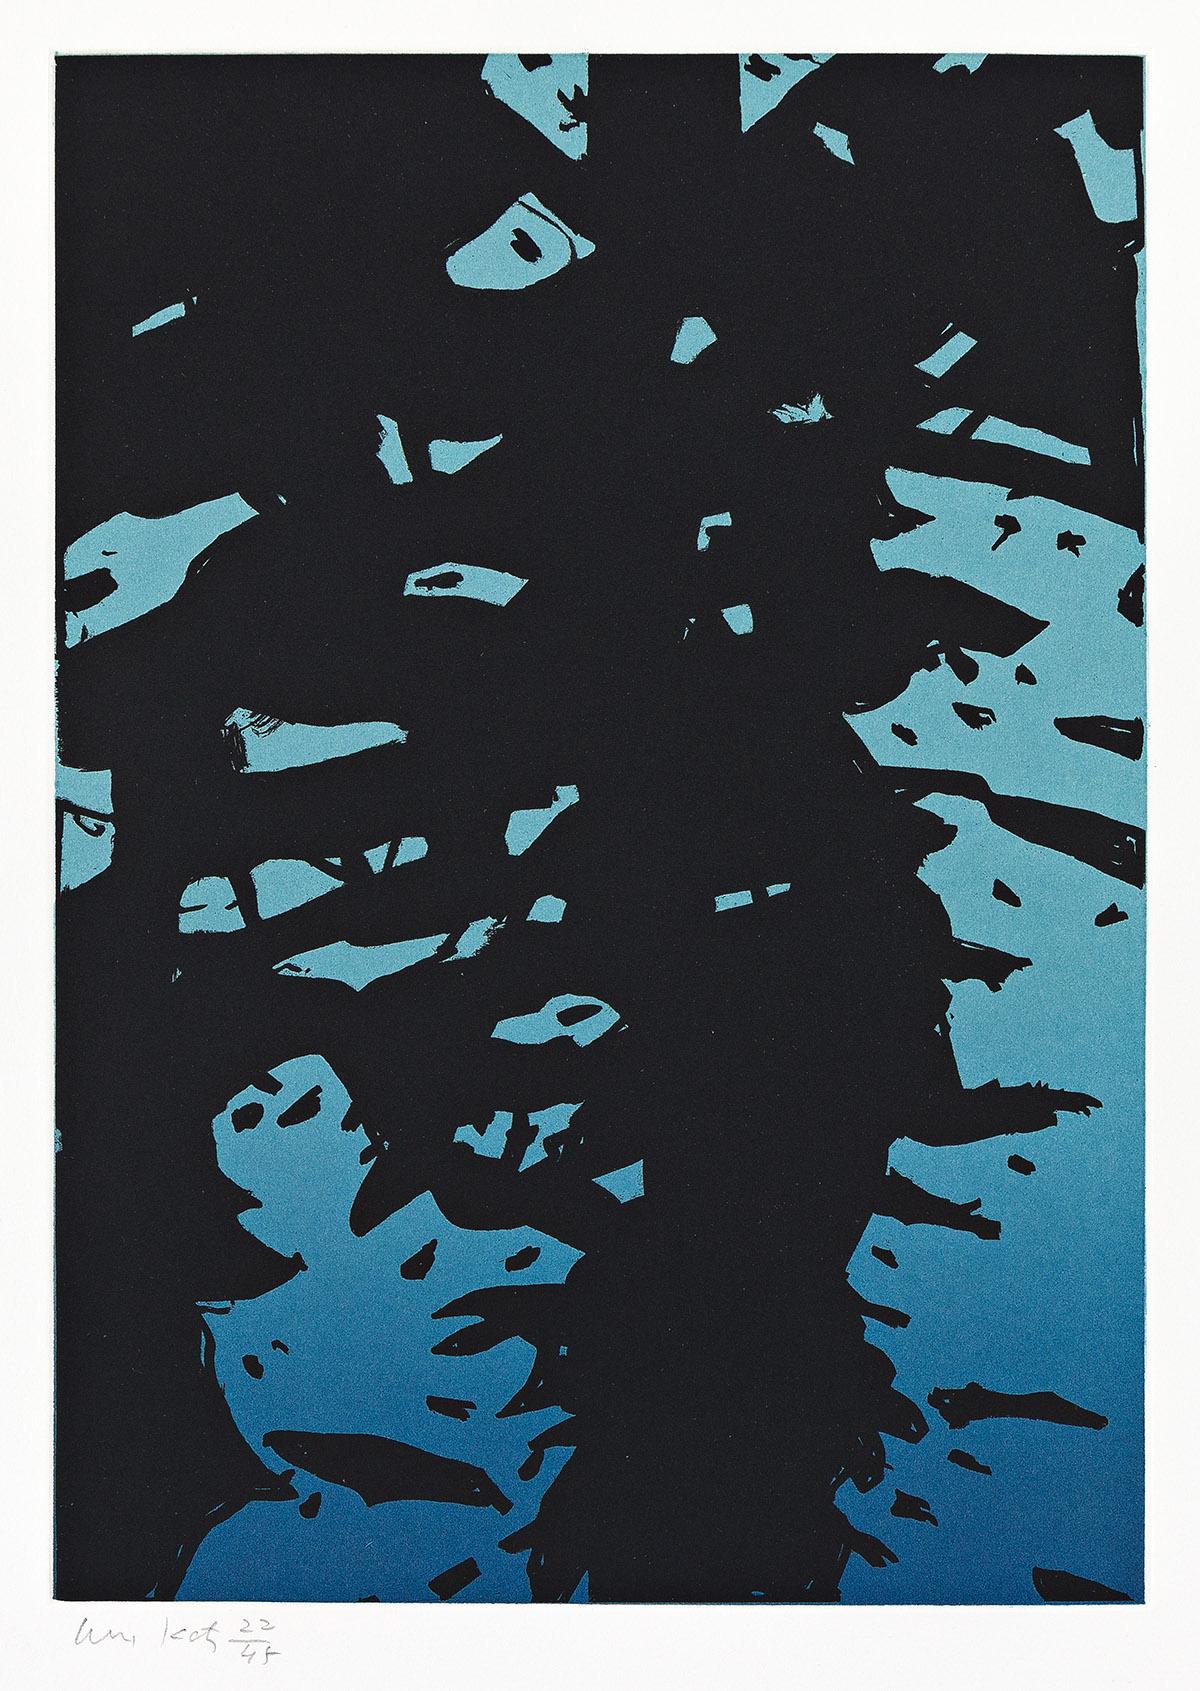 Alex Katz Abstract Print - Reflection I